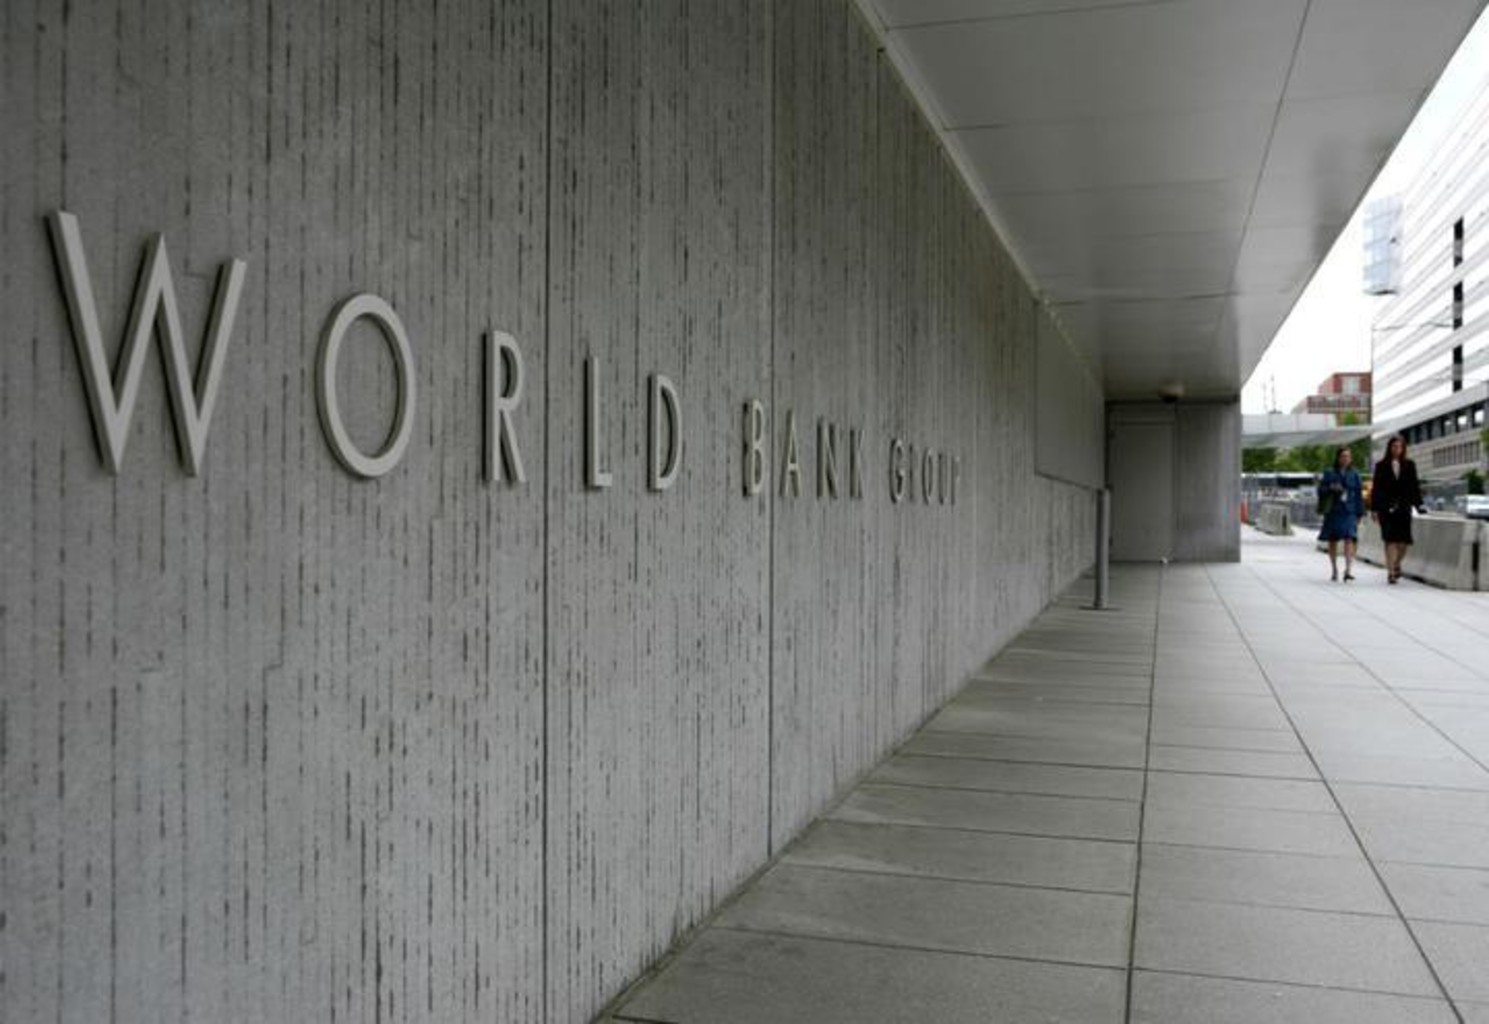 Всемирный банк оценивает объемы финансовой помощи Ливану